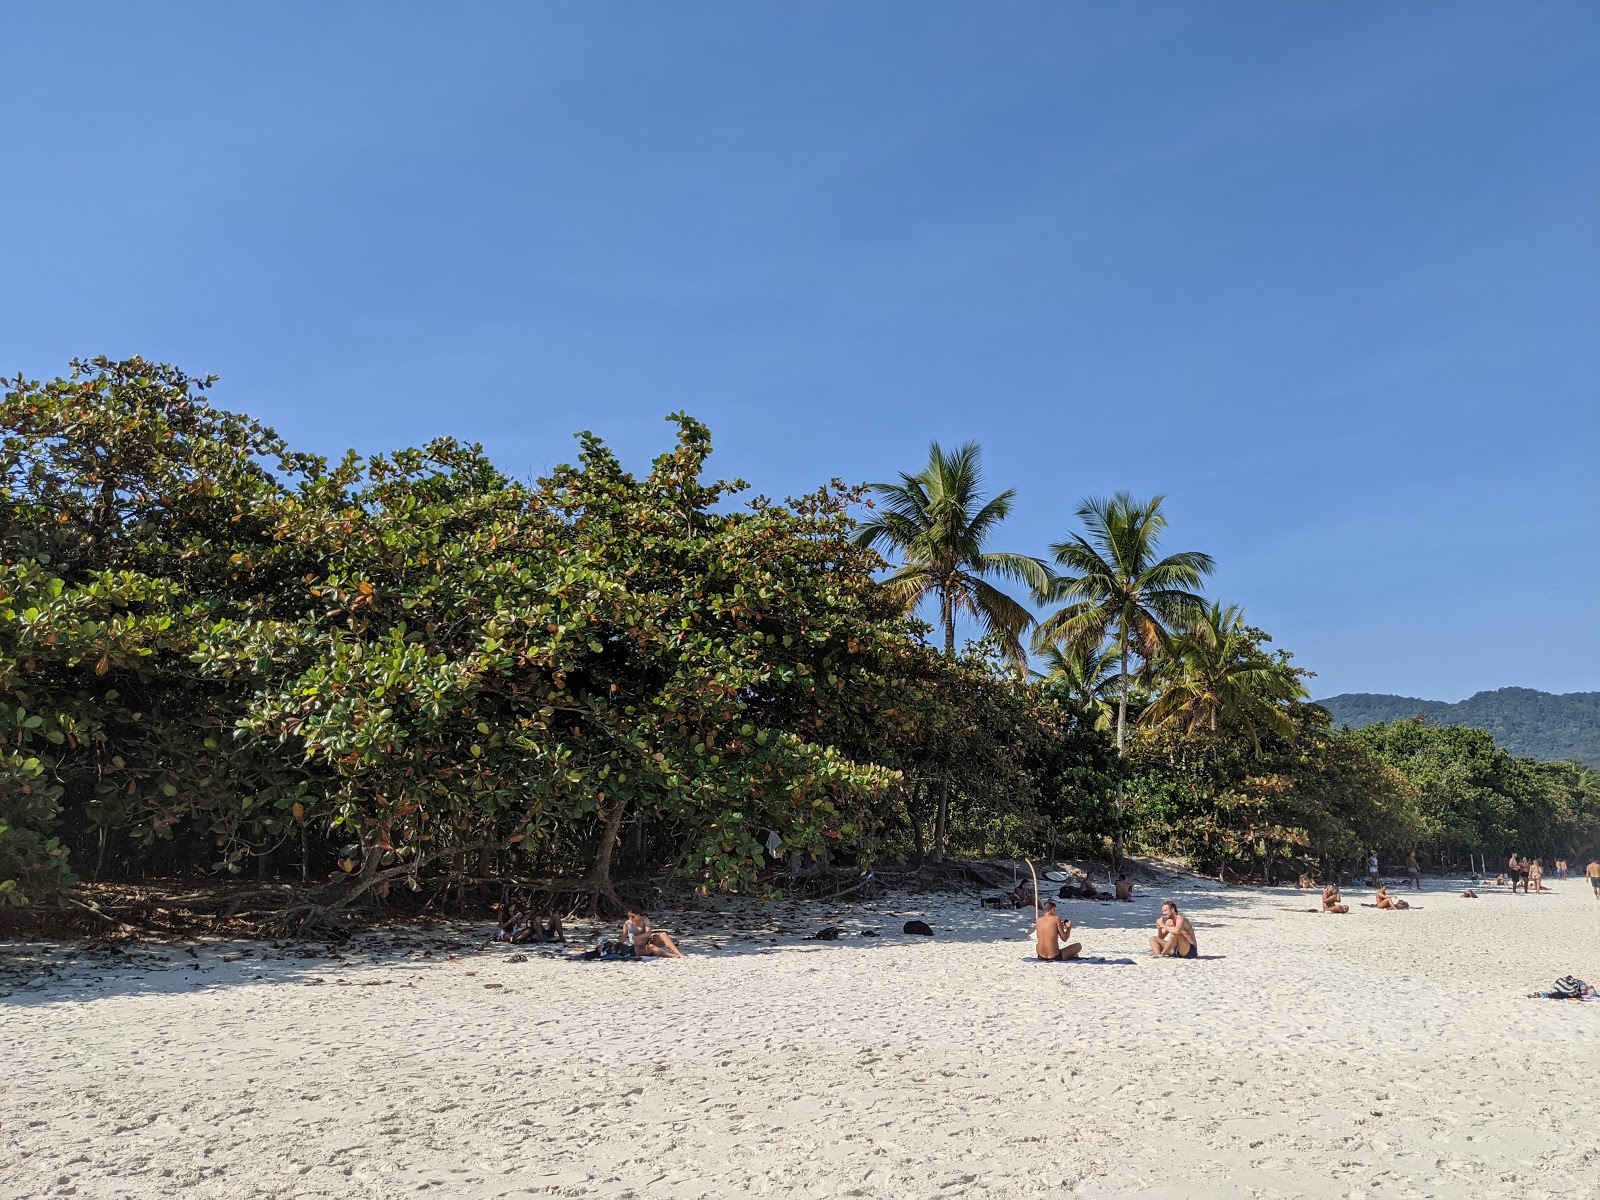 Fotografija Plaža Lopes Mendes nahaja se v naravnem okolju